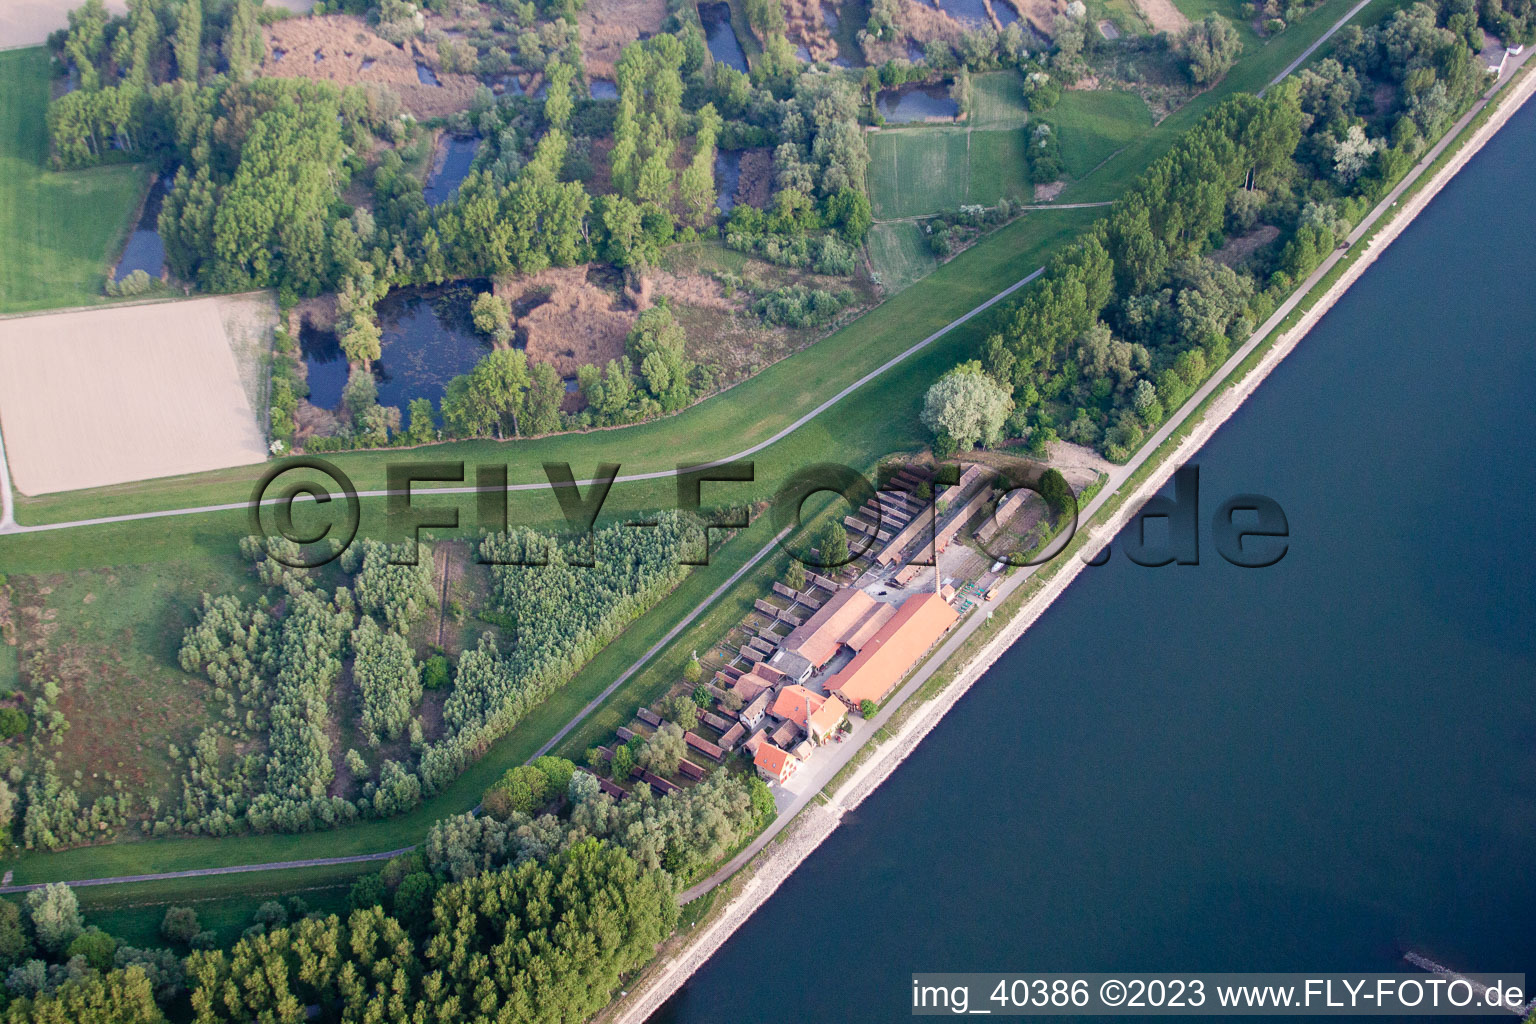 Quartier Sondernheim in Germersheim dans le département Rhénanie-Palatinat, Allemagne du point de vue du drone